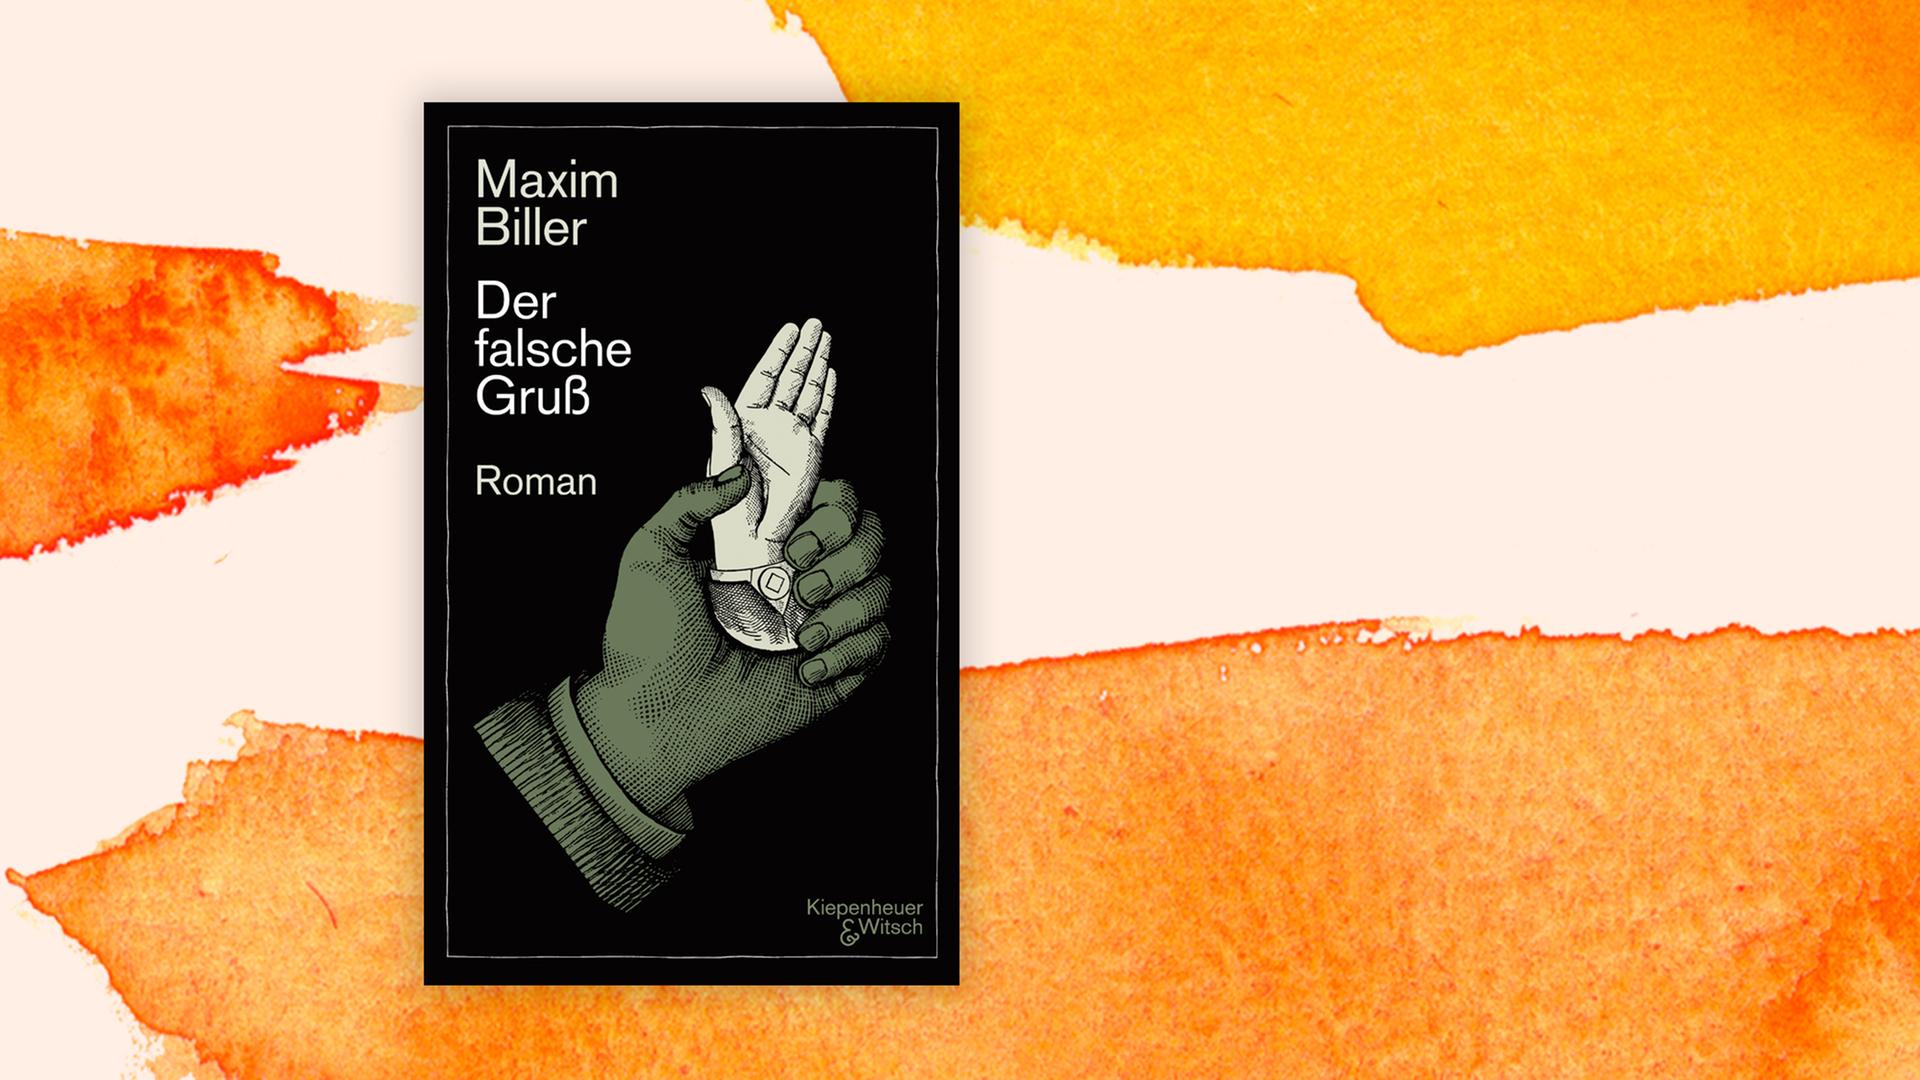 Die Illustration auf dem Buchcover von Maxim Billers Roman "Der falsche Gruß" zeigt eine Hand, die das verkleinerte Modell einer emporgereckten Hand hält.